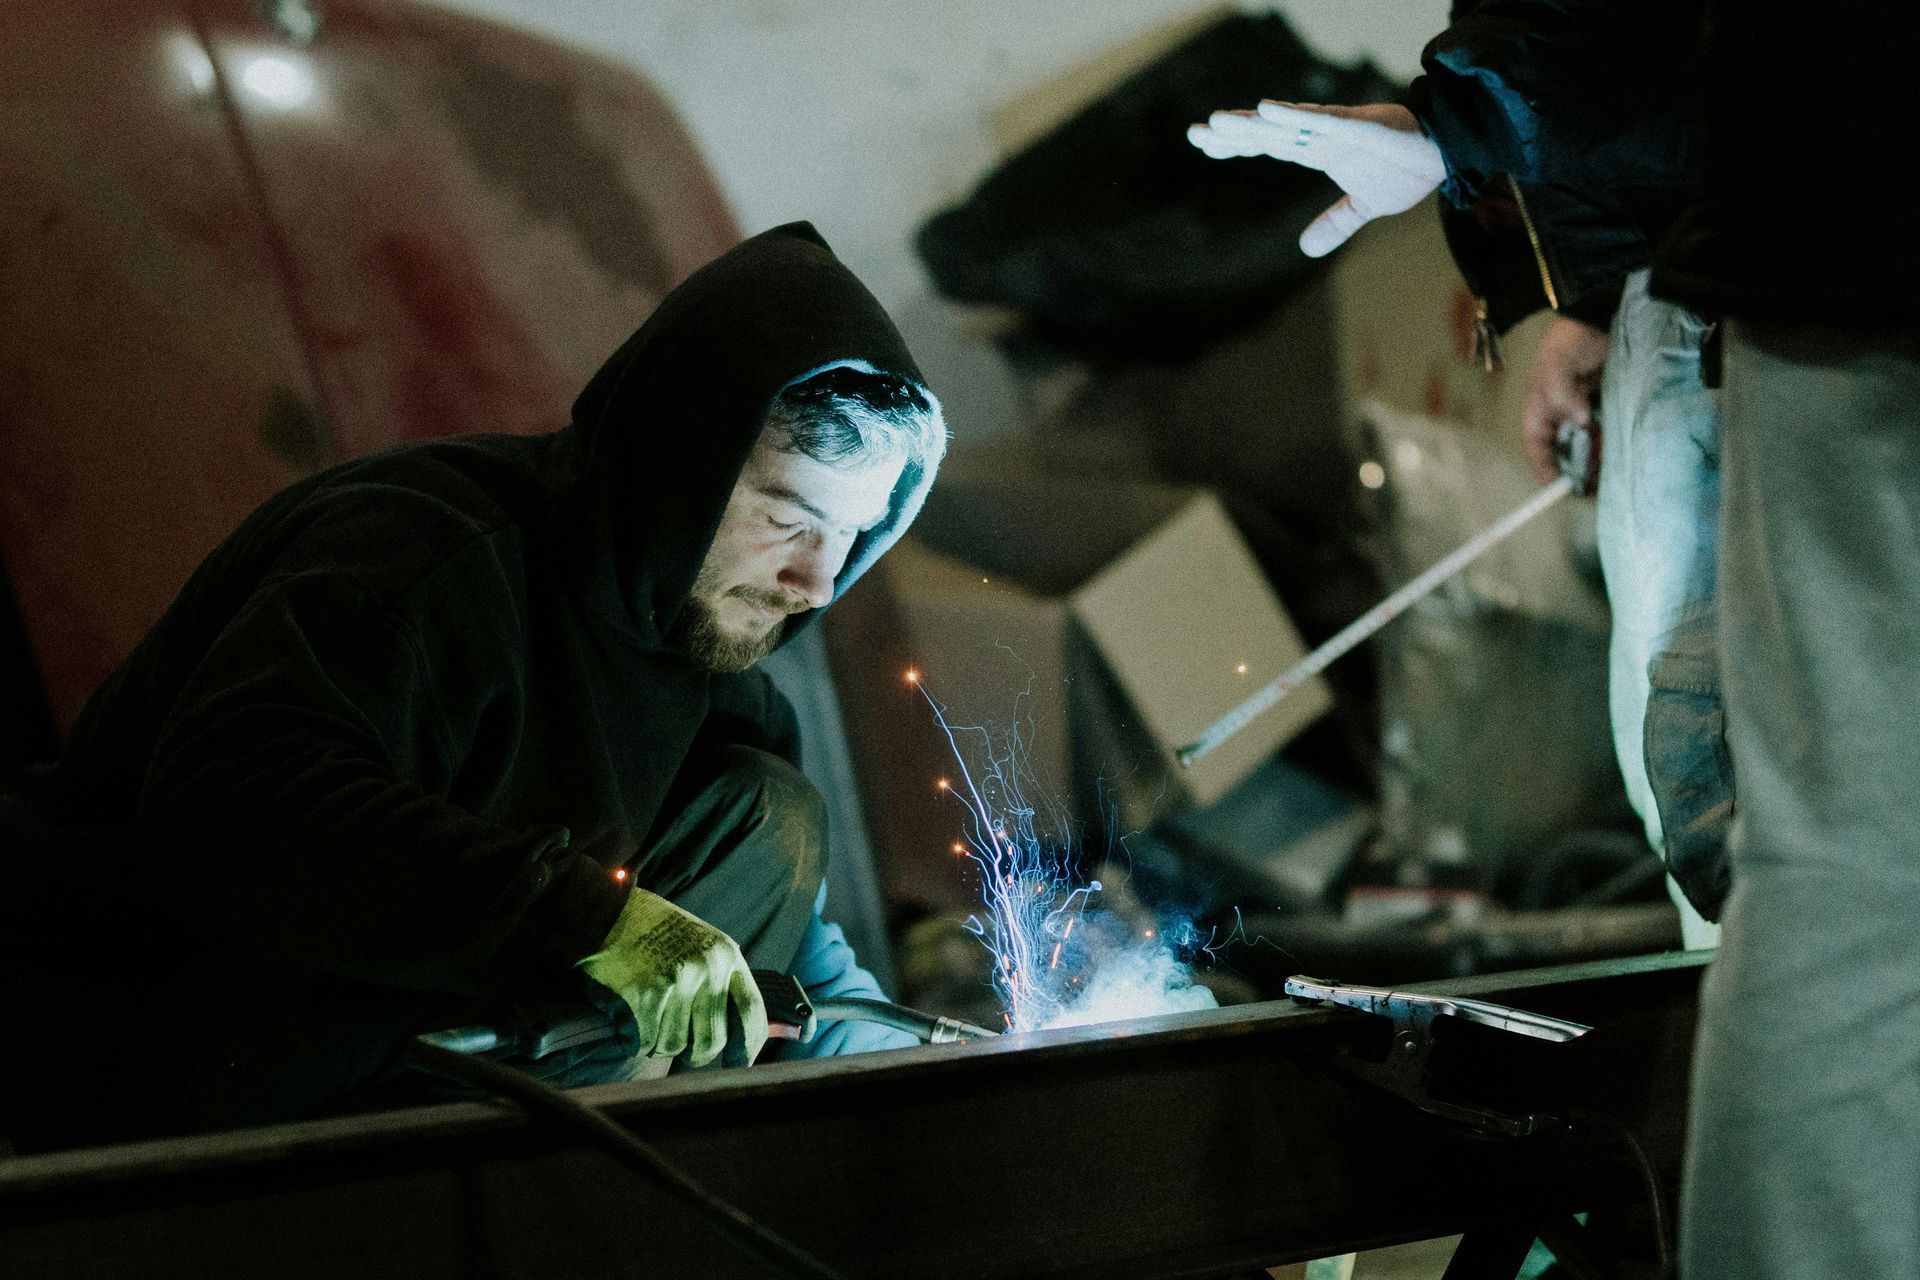 A man welding an industrial machine.